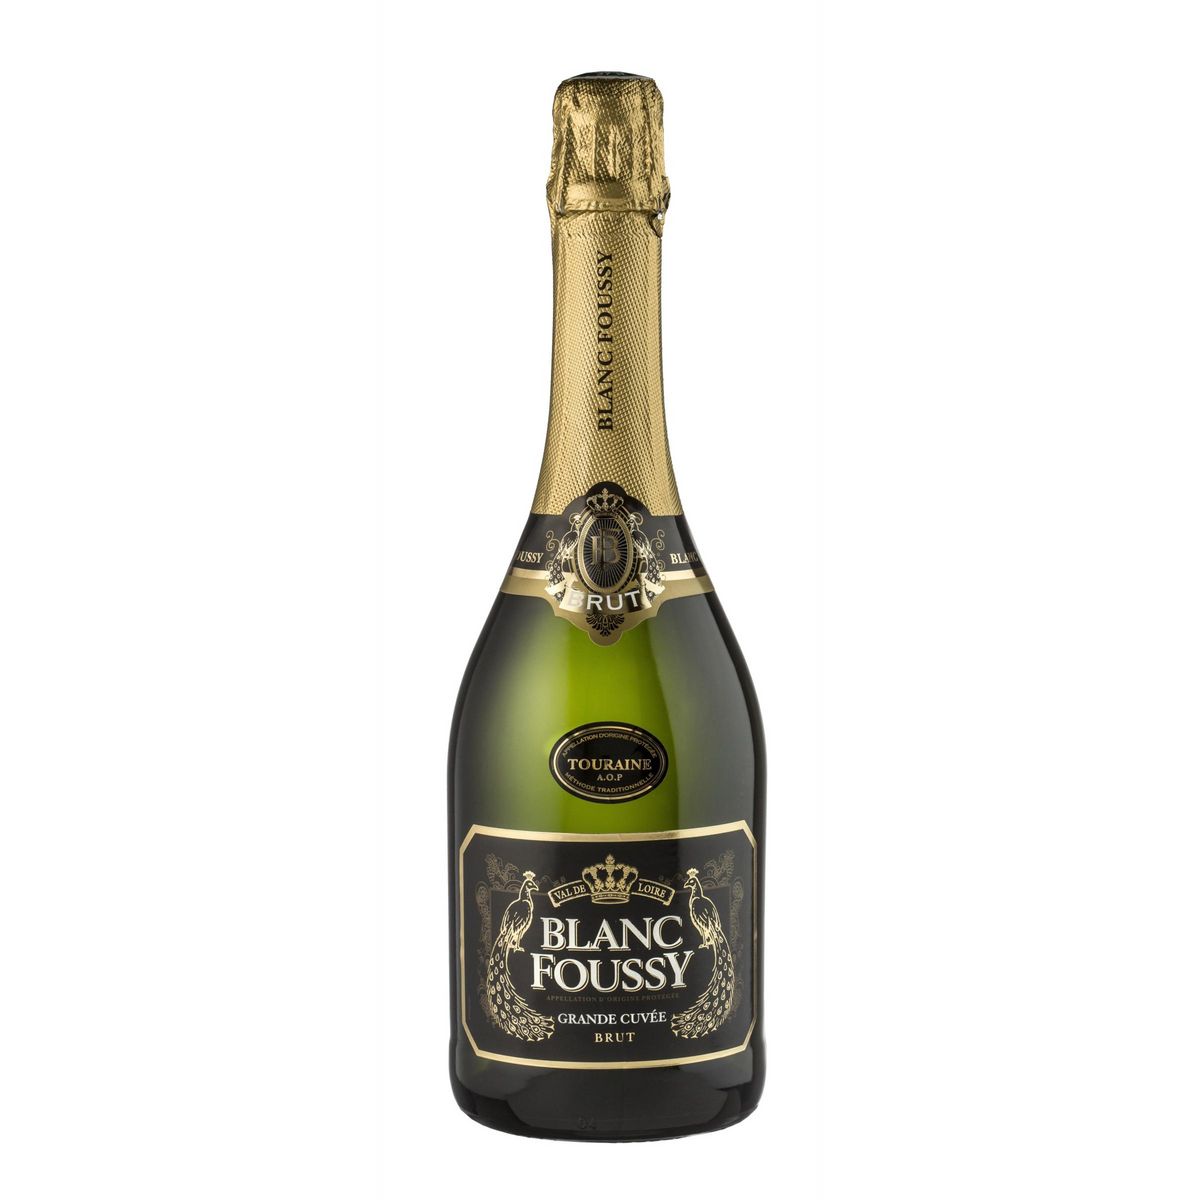 BLANC FOUSSY AOP Touraine Blanc Foussy Grande Cuvée 75cl